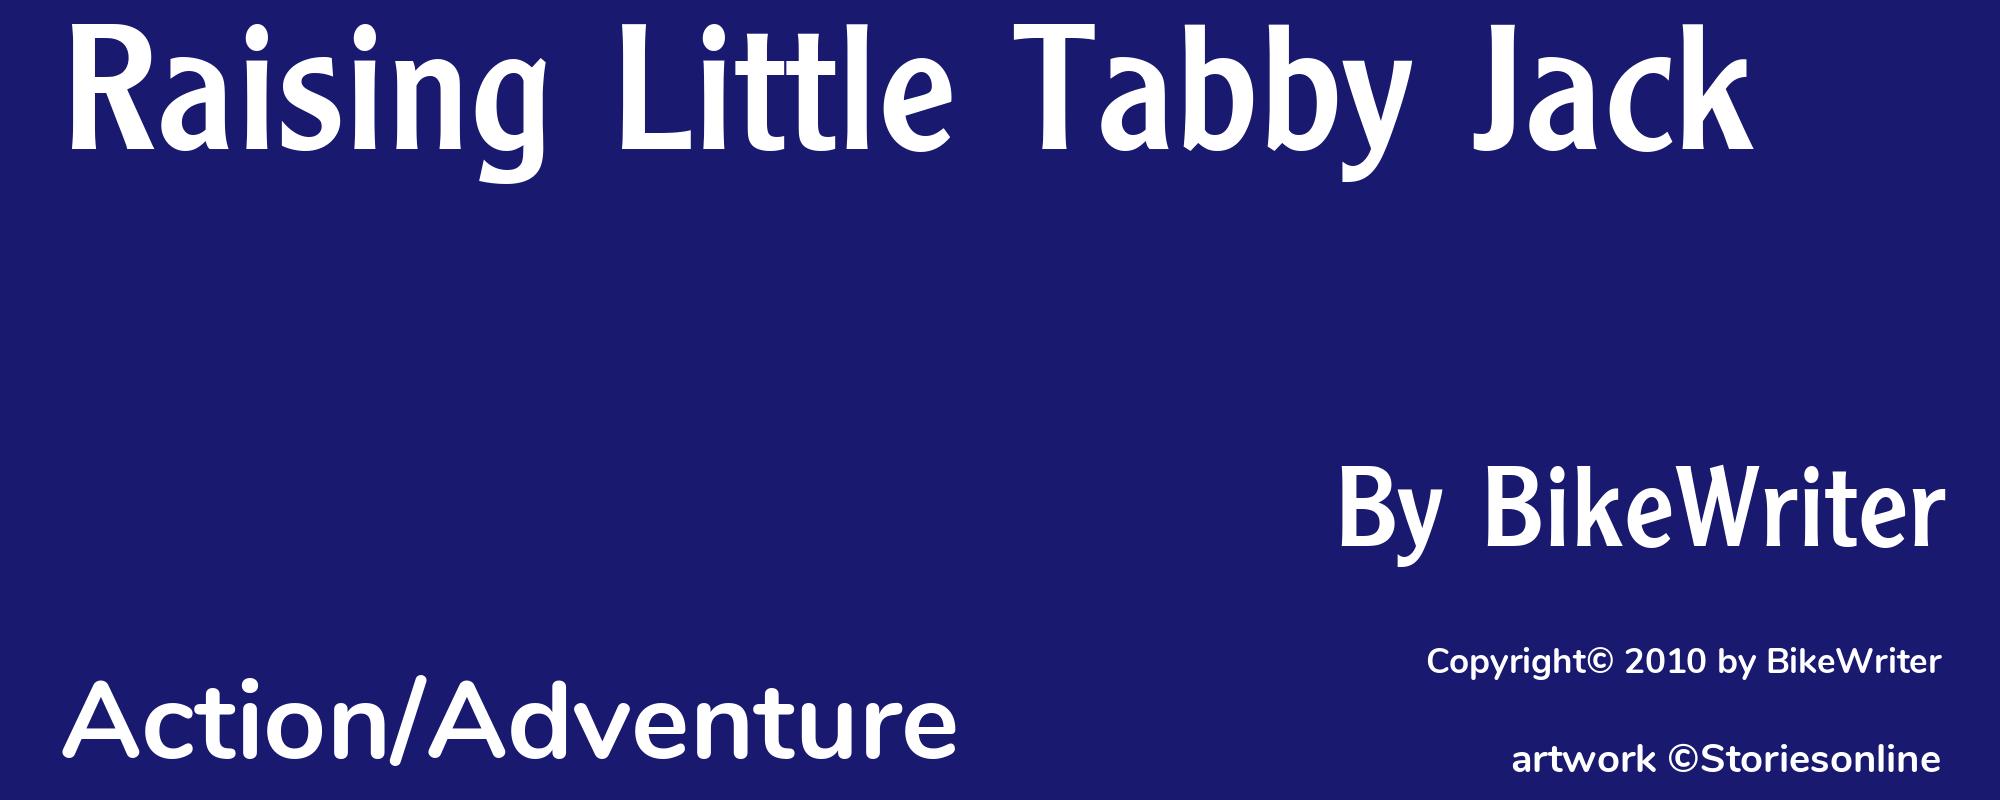 Raising Little Tabby Jack - Cover